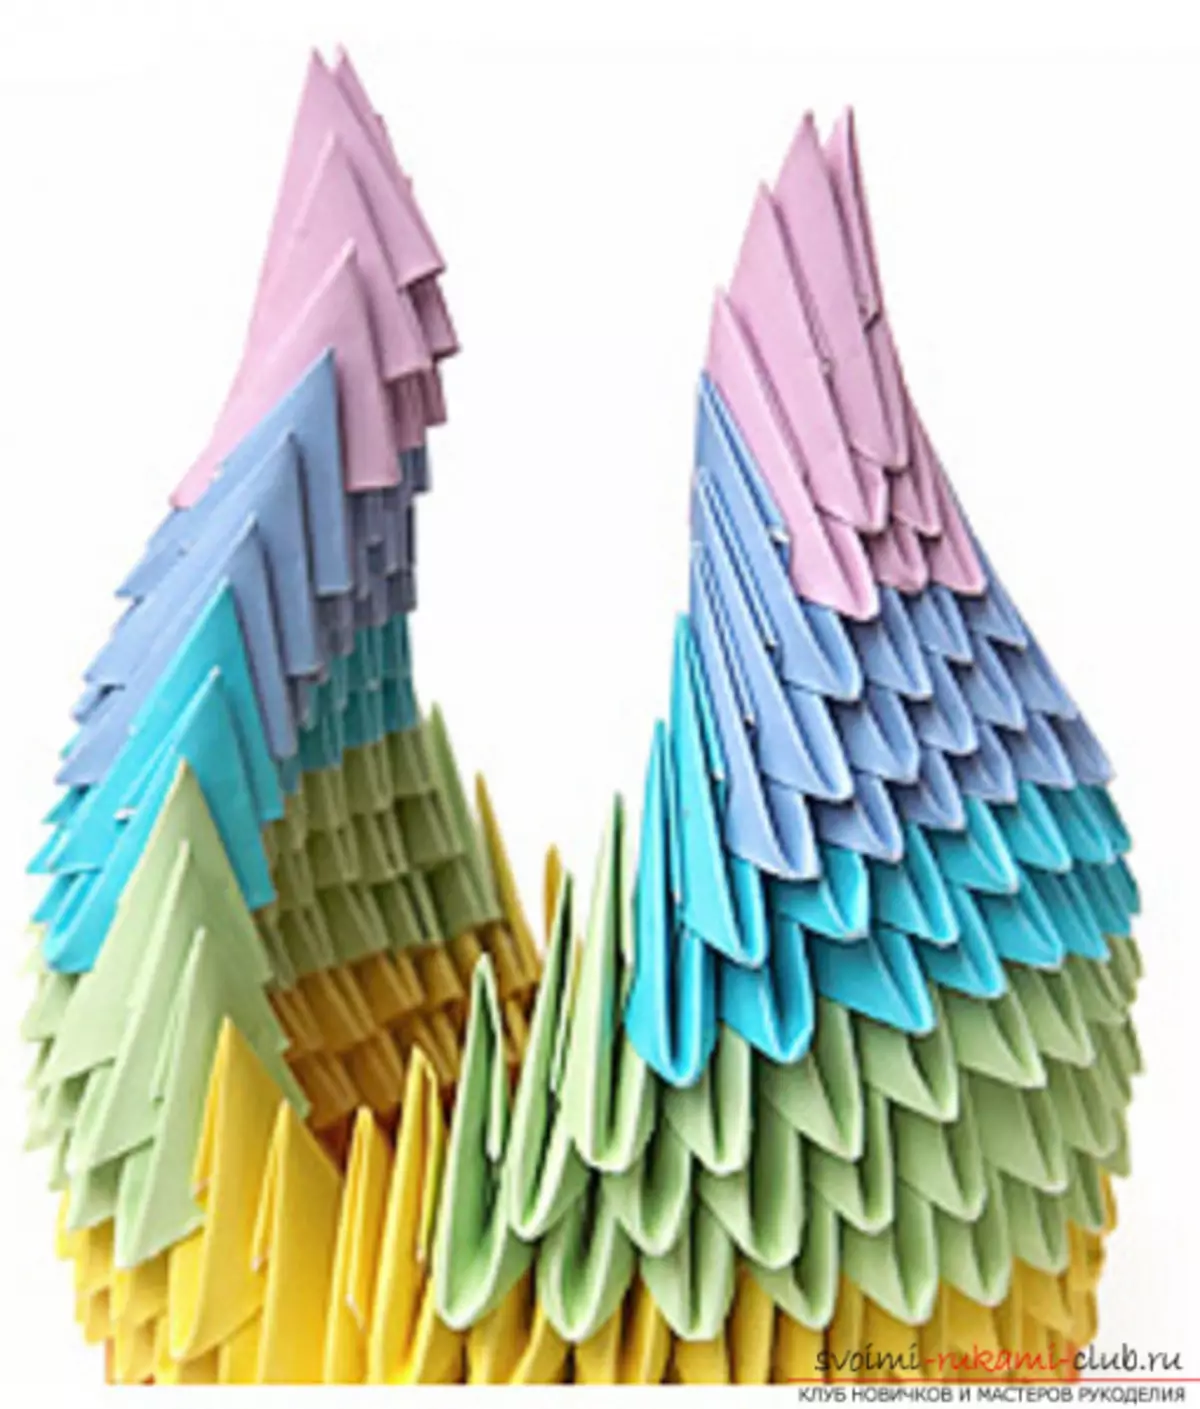 Lebed origami թղթից. Ինչպես քայլ առ քայլ պատրաստել լուսանկարներով եւ տեսանյութով